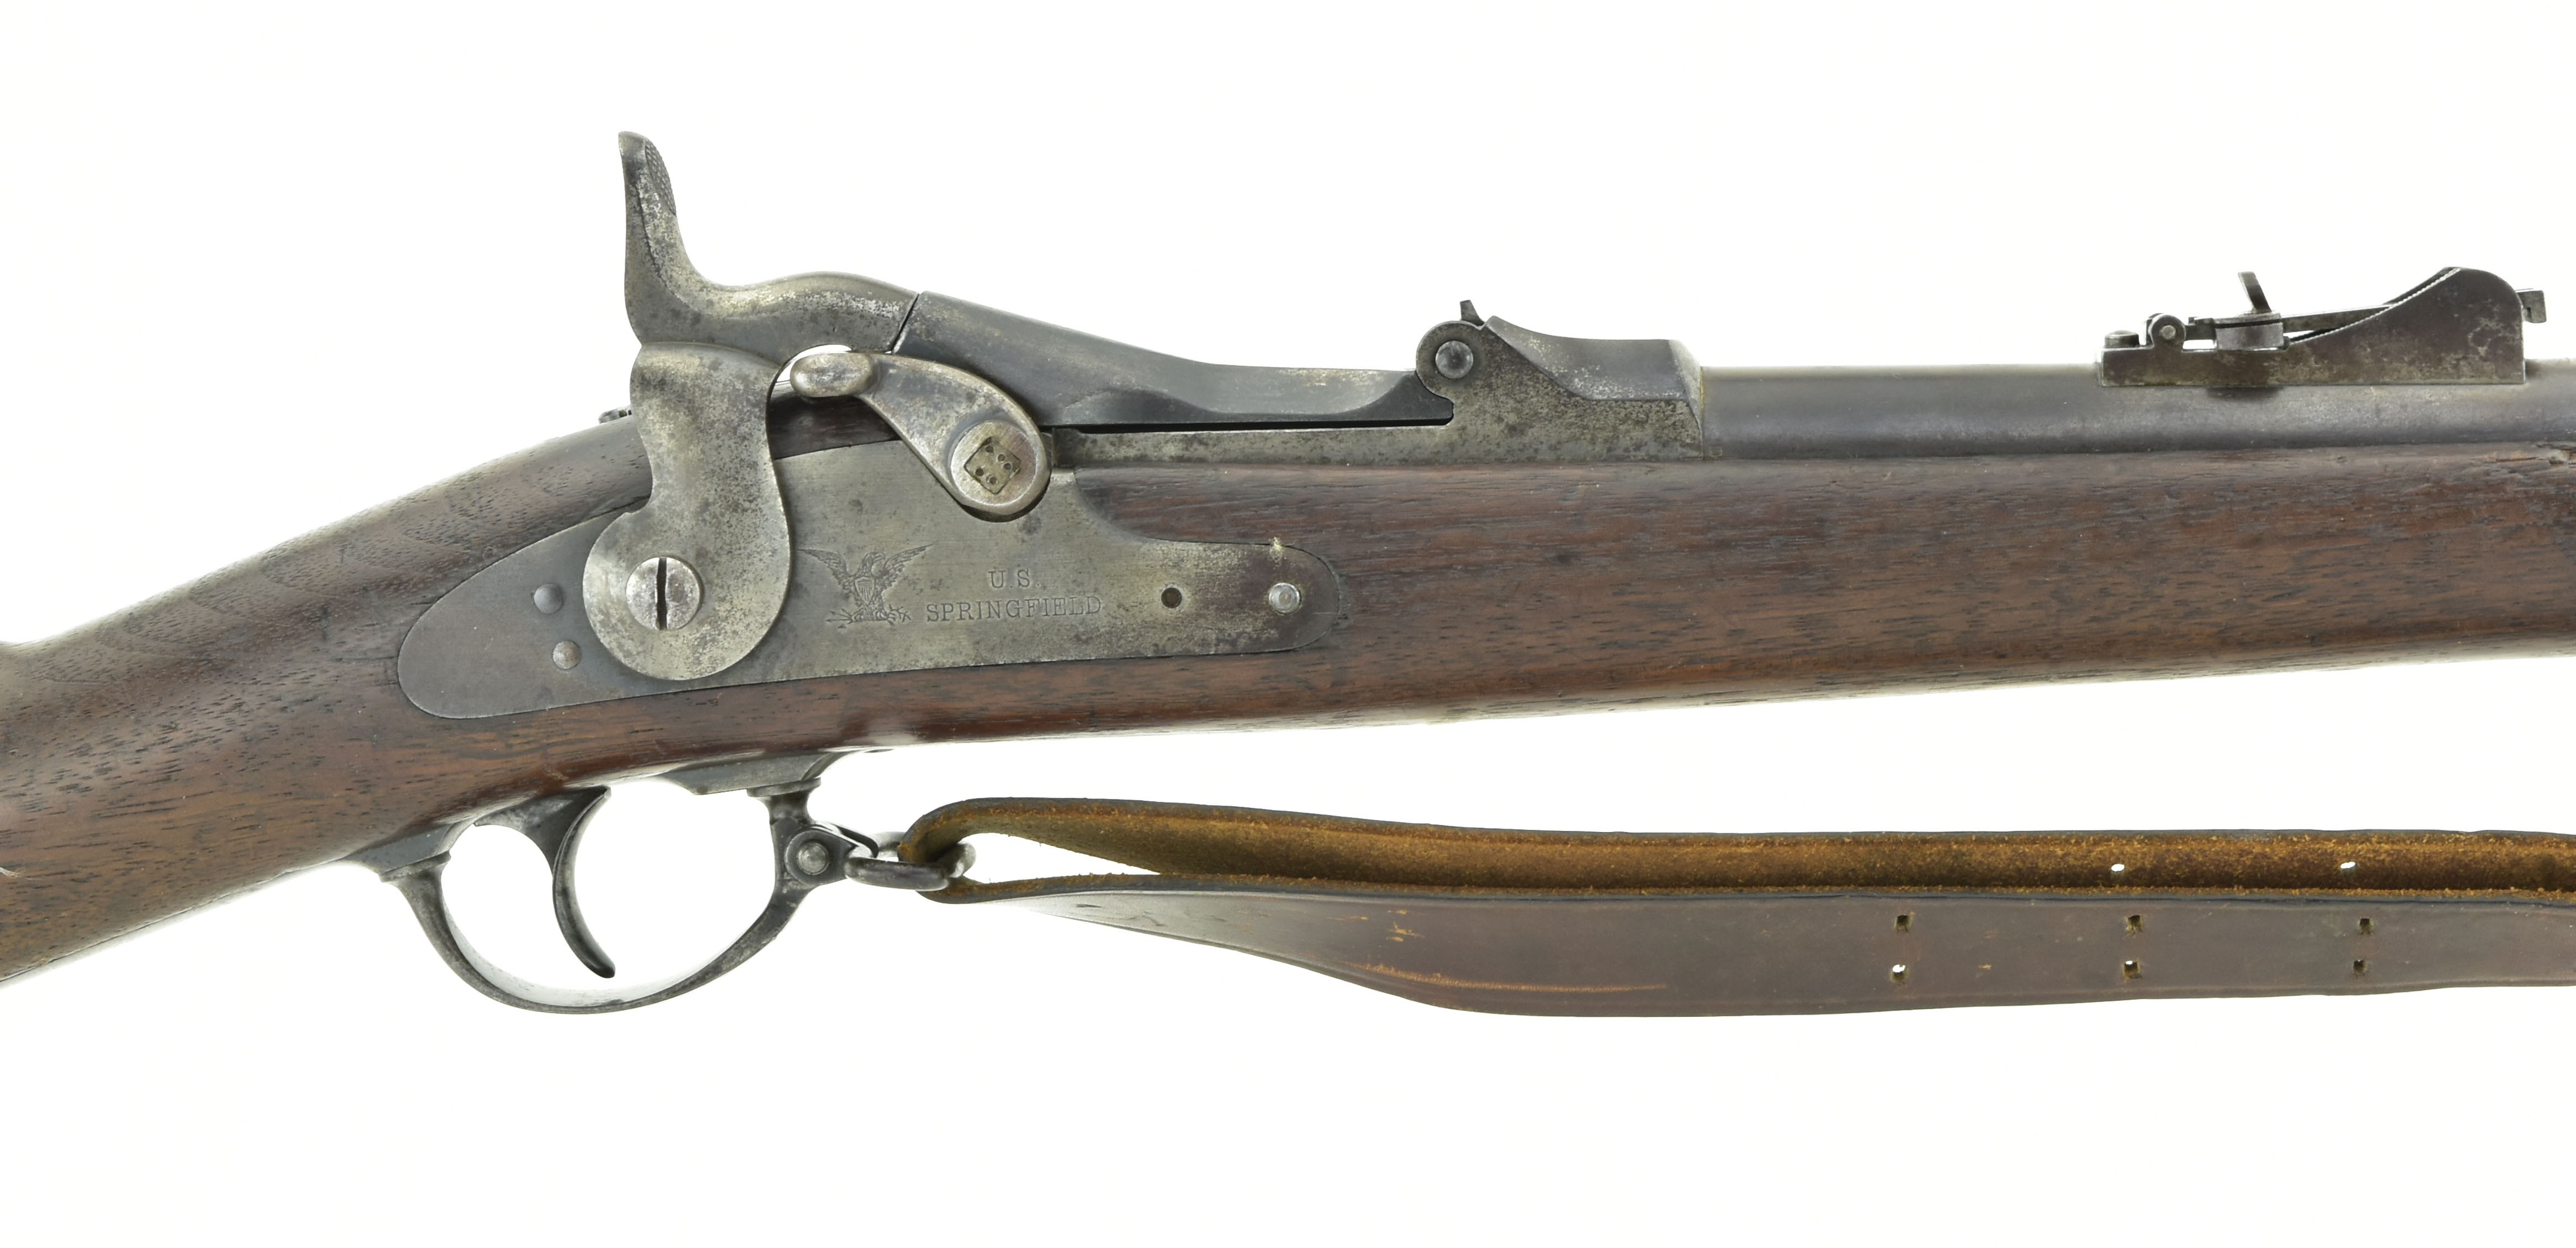 1879 trapdoor springfield rifle serial number lookup